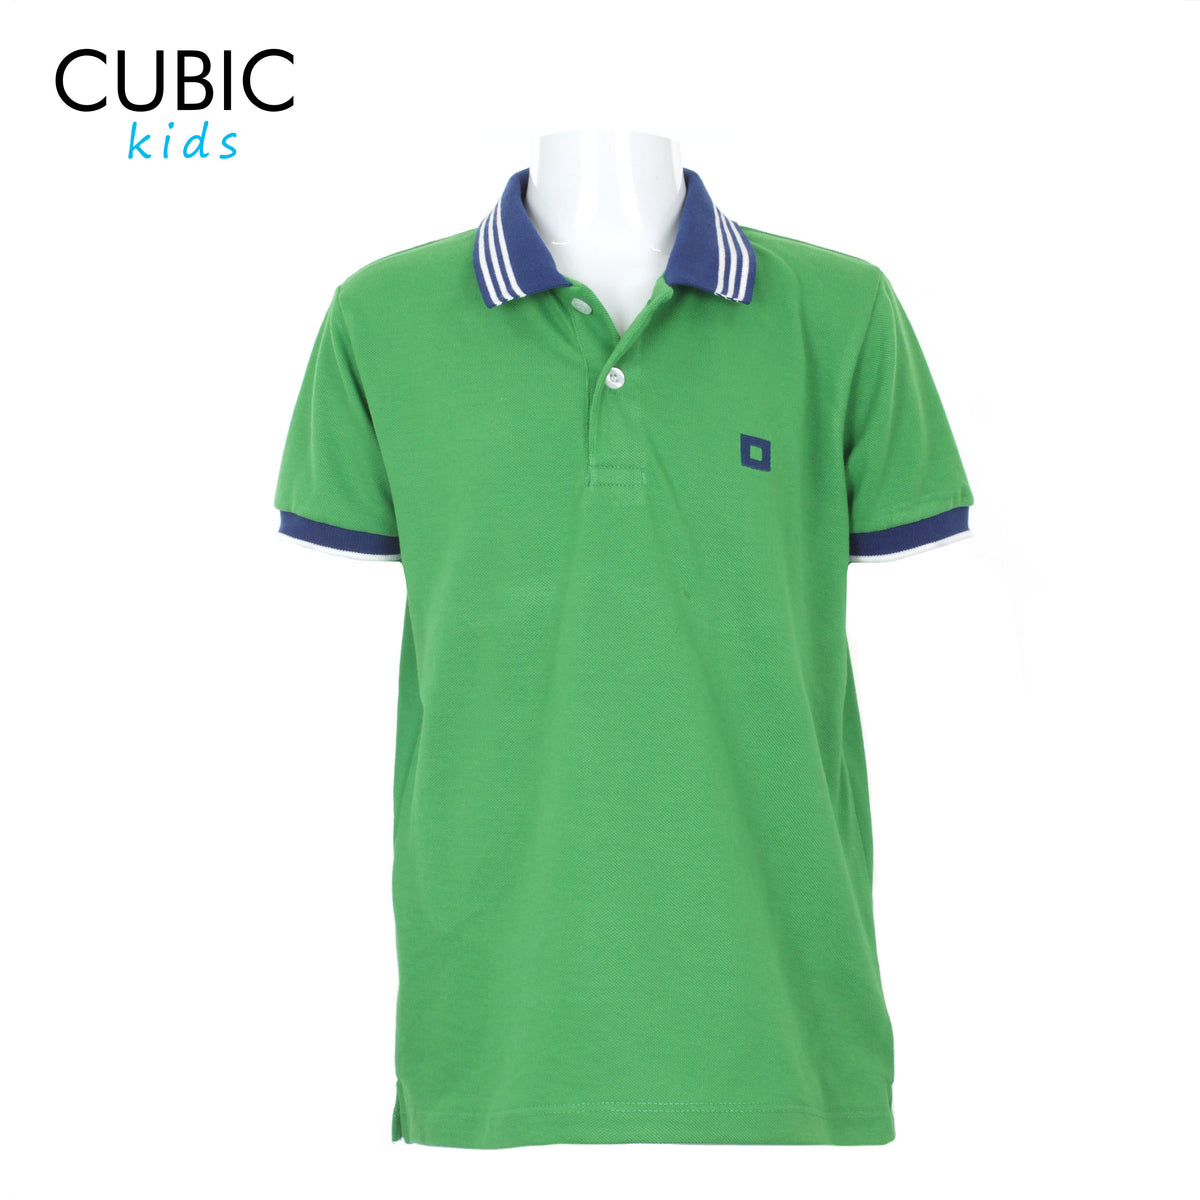 Cubic Boys Kids Pique Polo Shirt Polo-Shirt Collar Top Top for Boys - CKP2221H